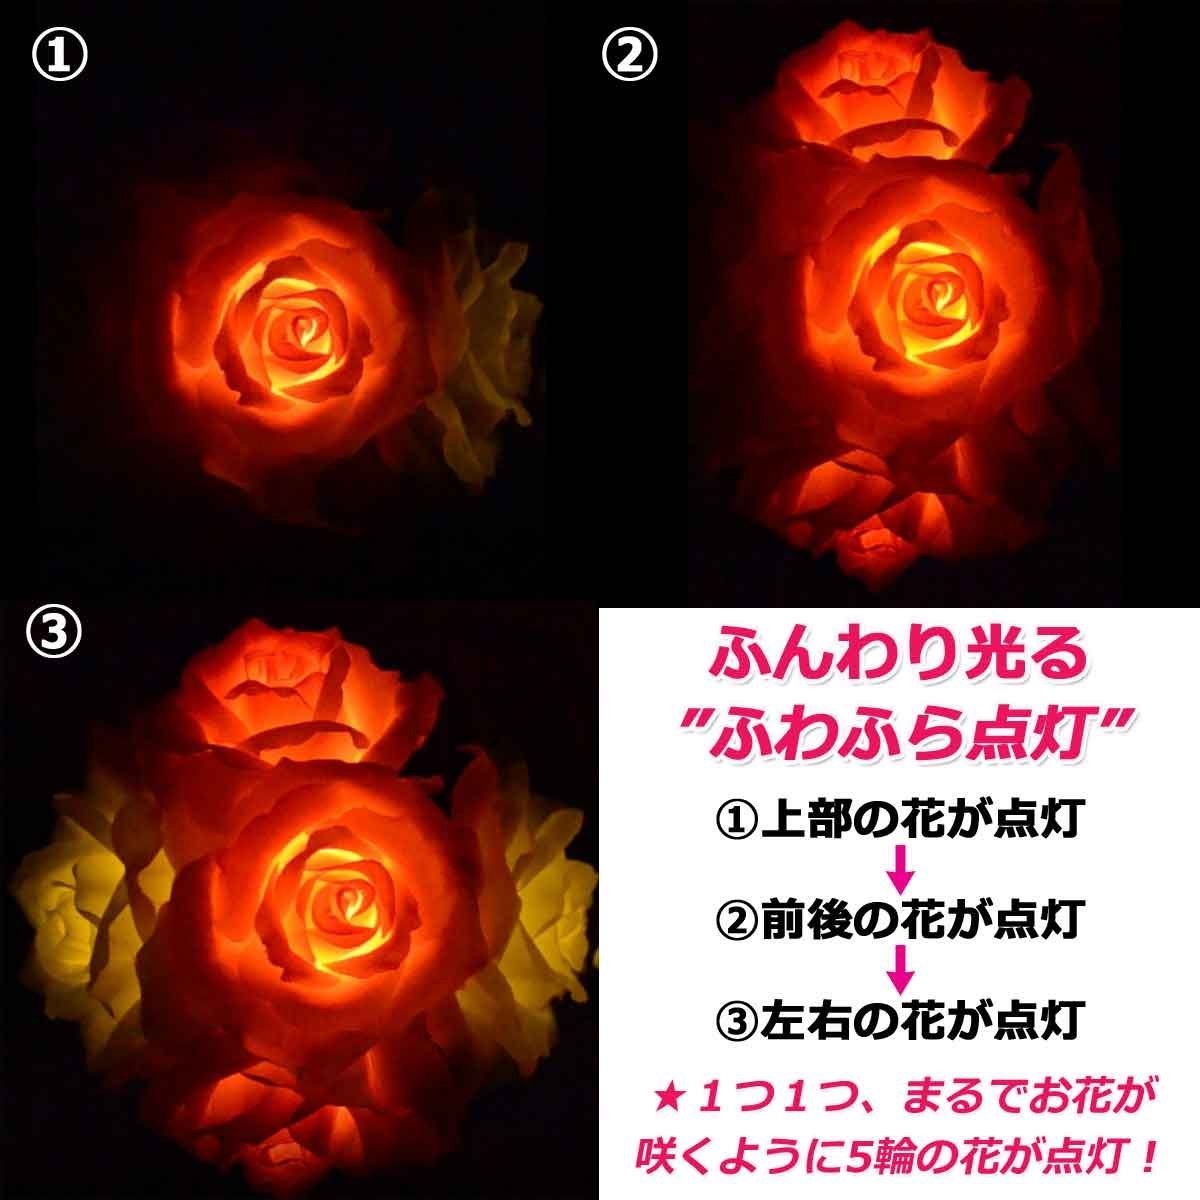 柔光依序  由(1)上->(2)前,後->(3)左,右一朵朵的 分3 階段 5朵玫瑰綻放萌光.